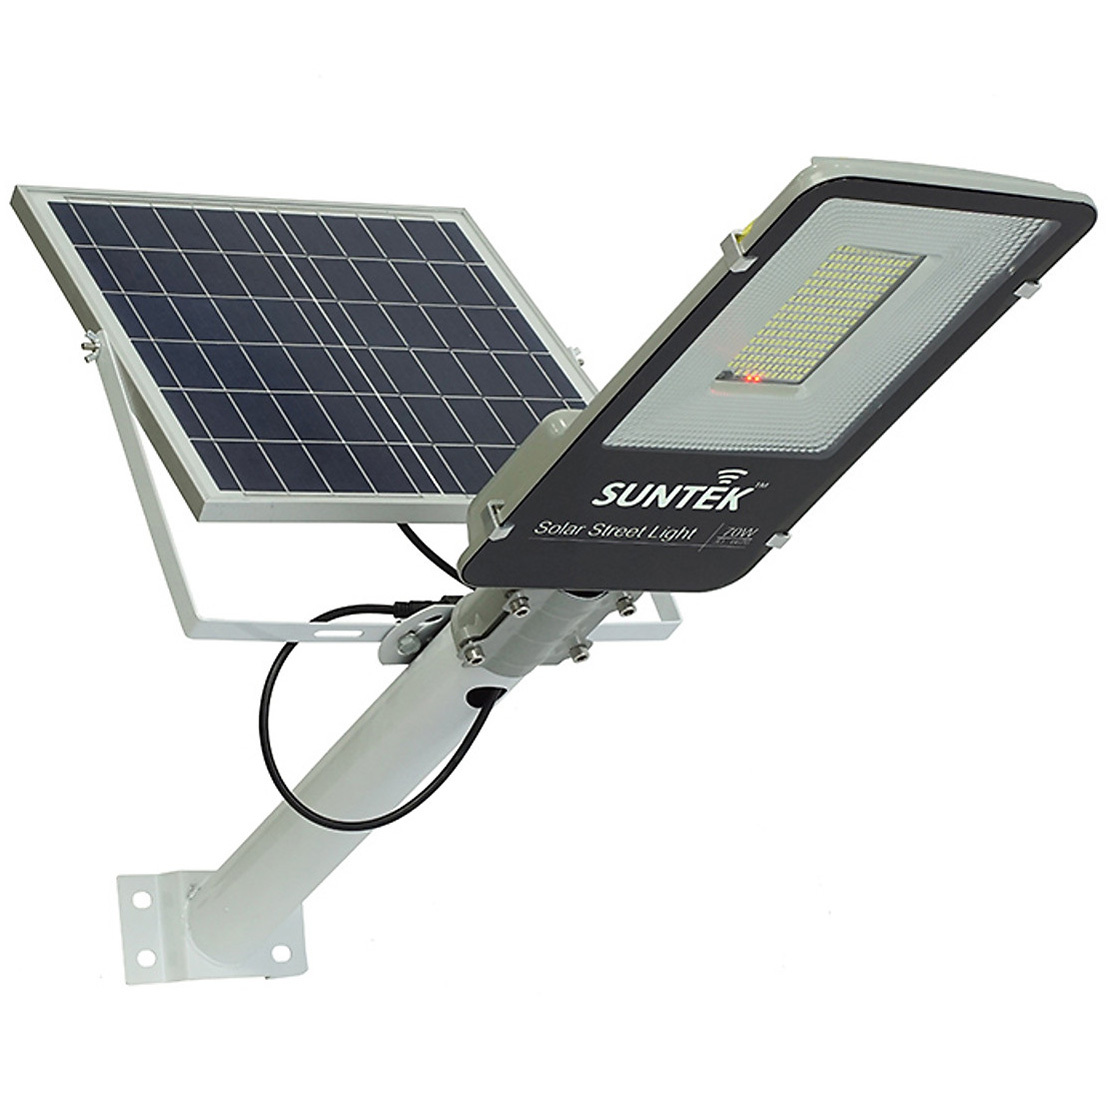 Đèn đường năng lượng mặt trời Suntek JD-6670 - 70W